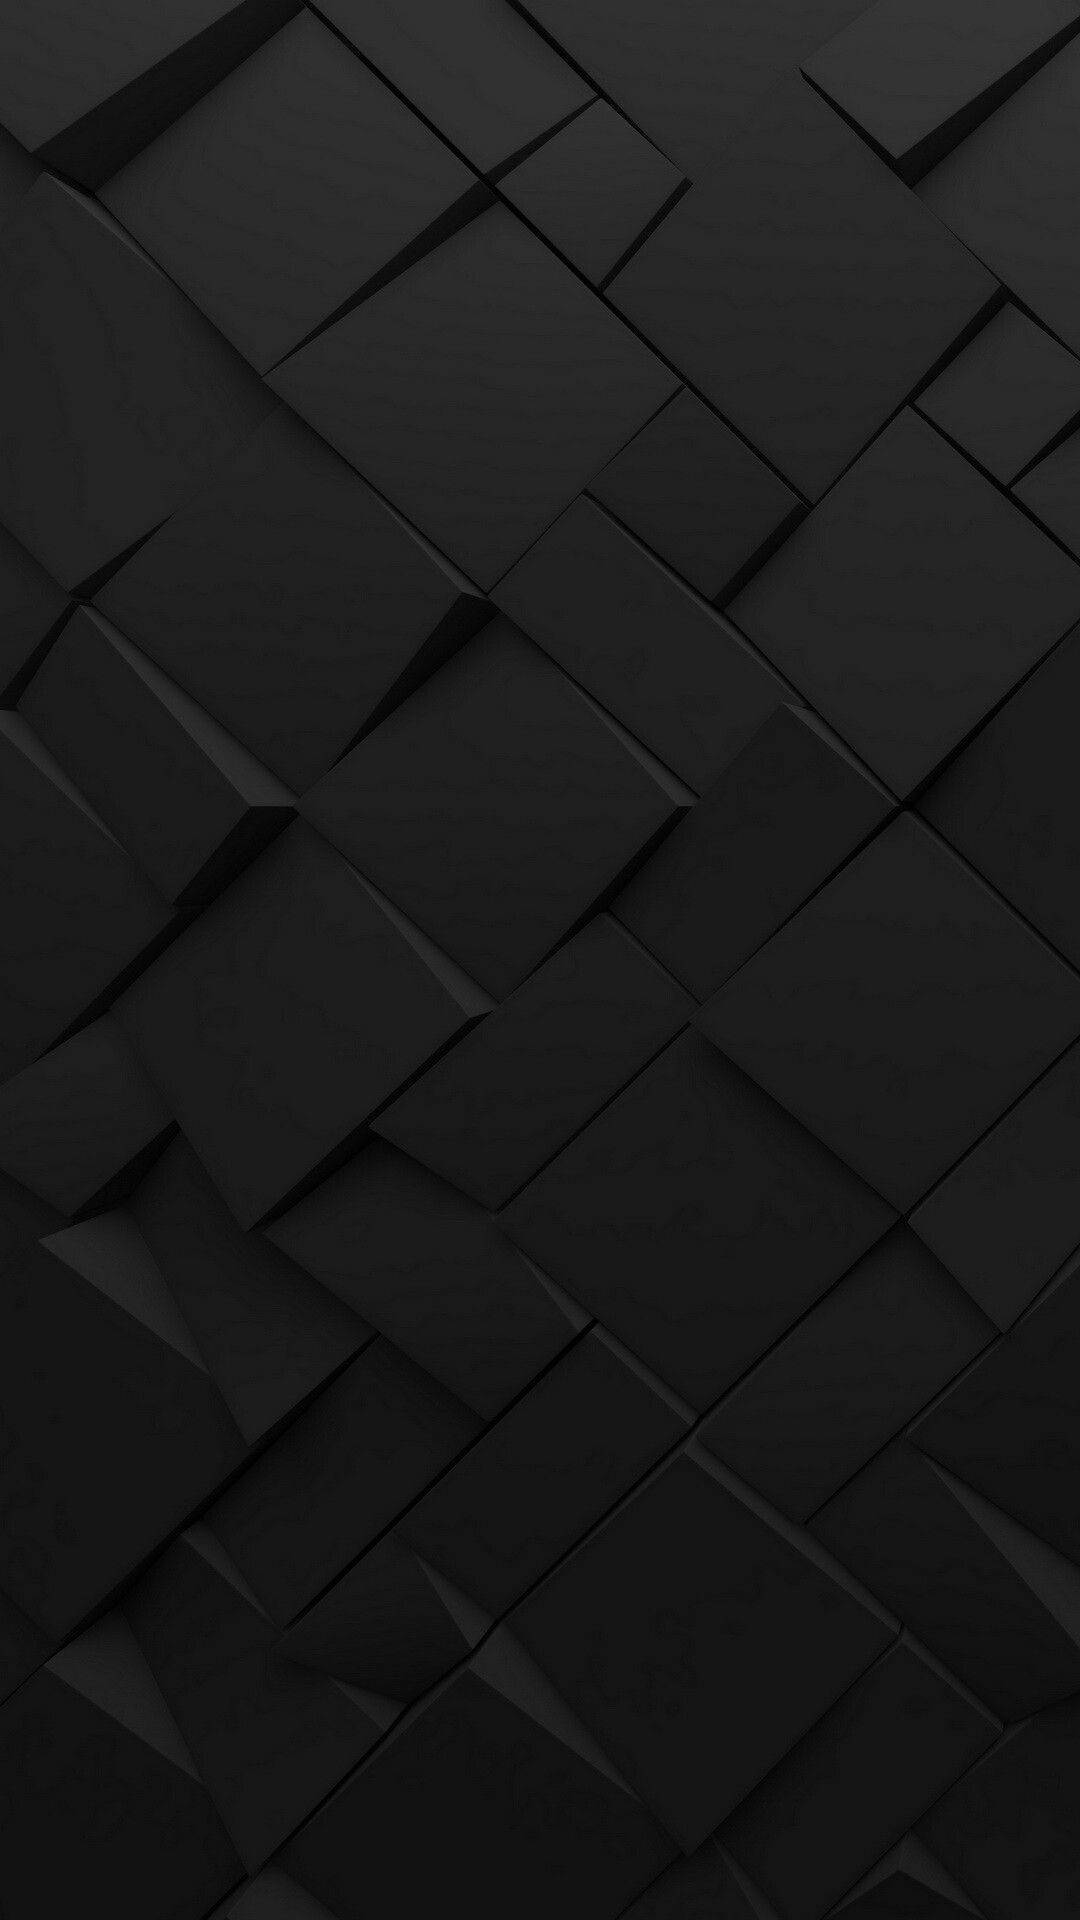 Black Theme Mobile Wallpaper